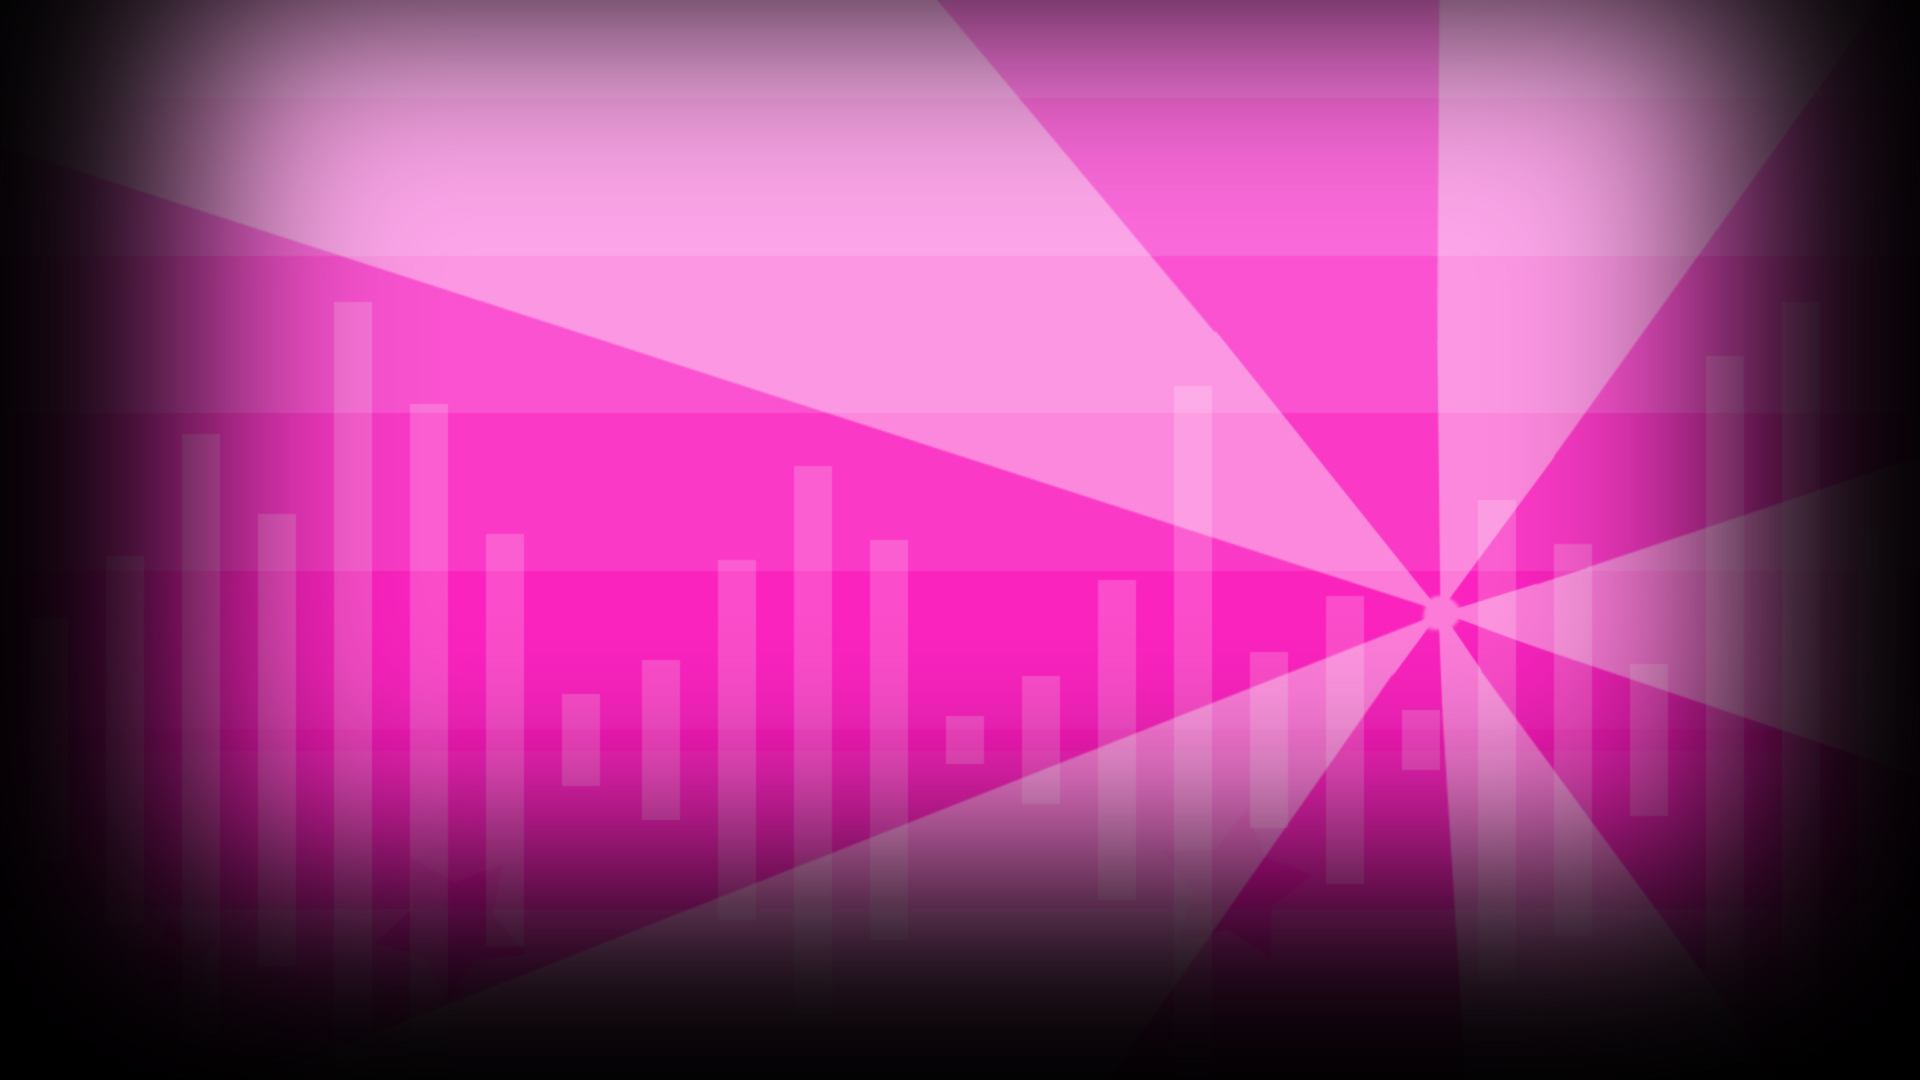 HD wallpaper: widescreen Pink Steam, backgrounds, full frame, pink